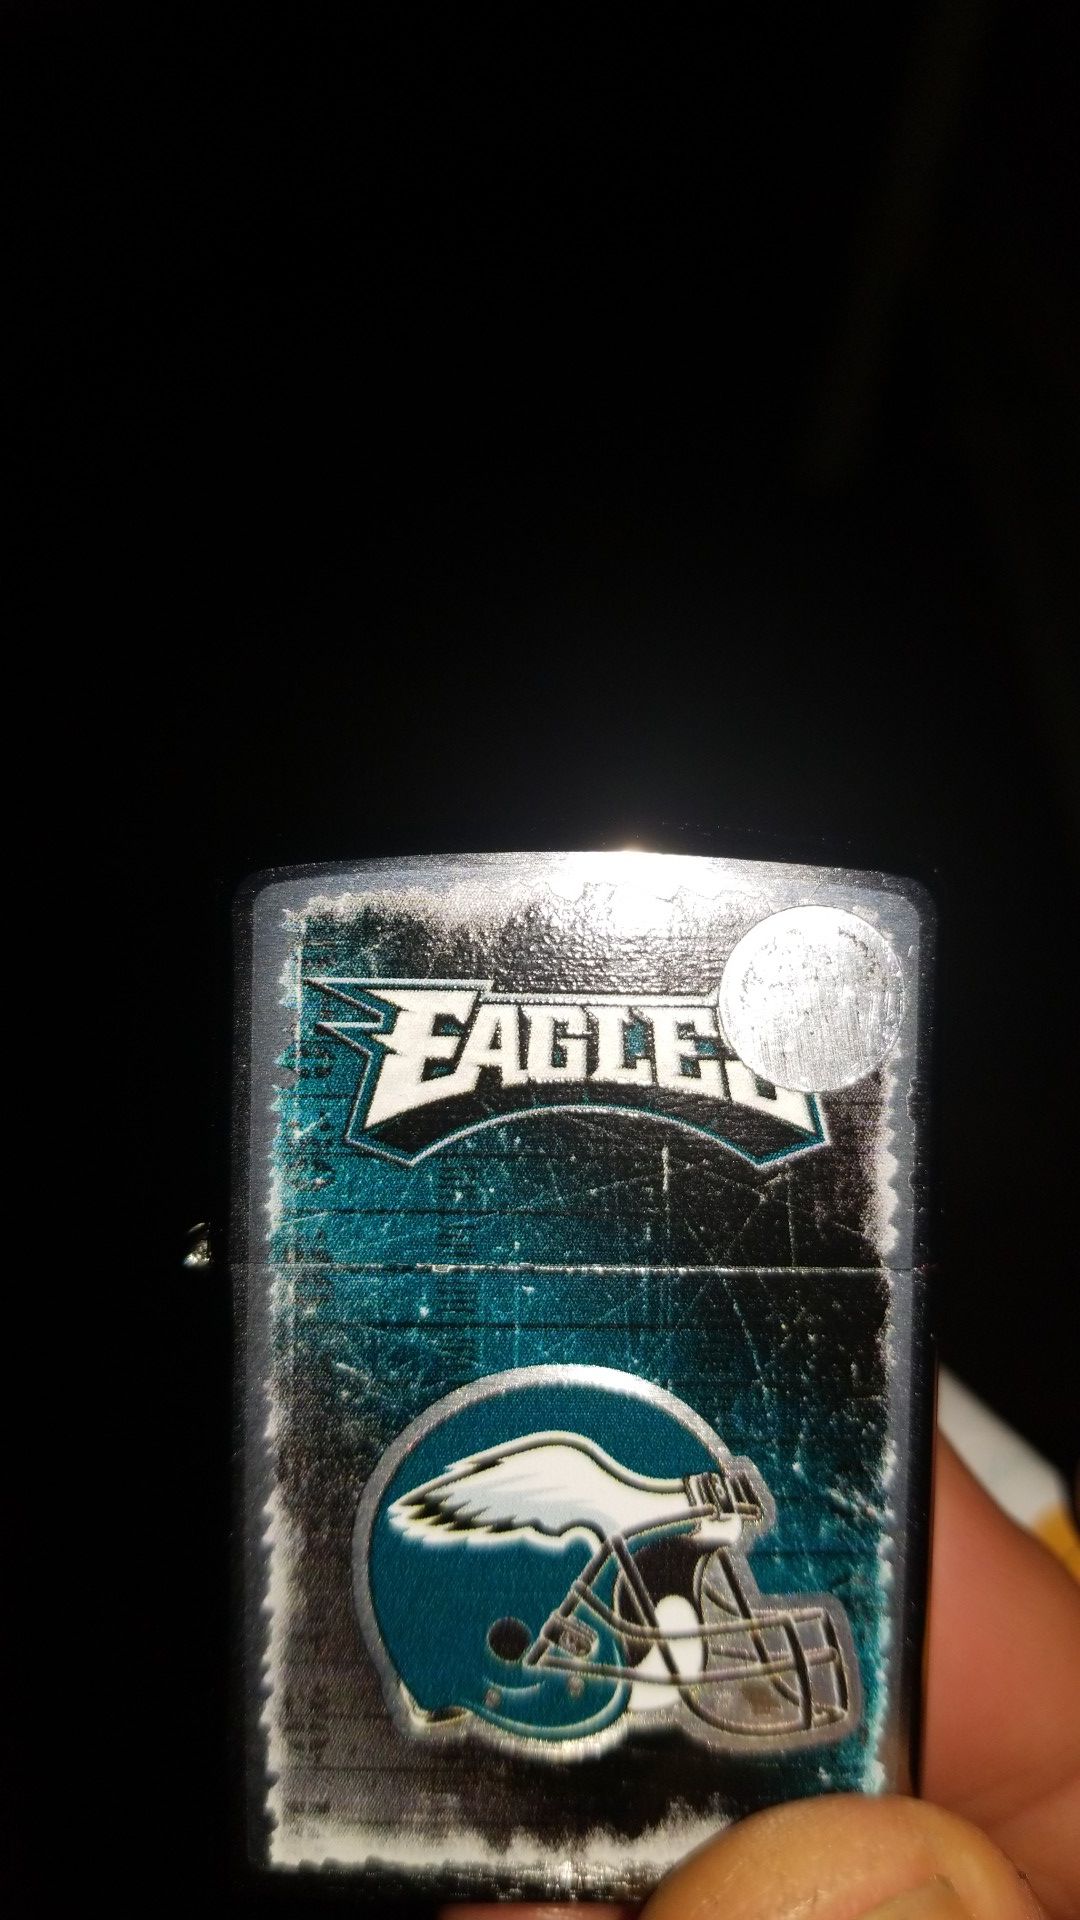 Eagles zippo lighter